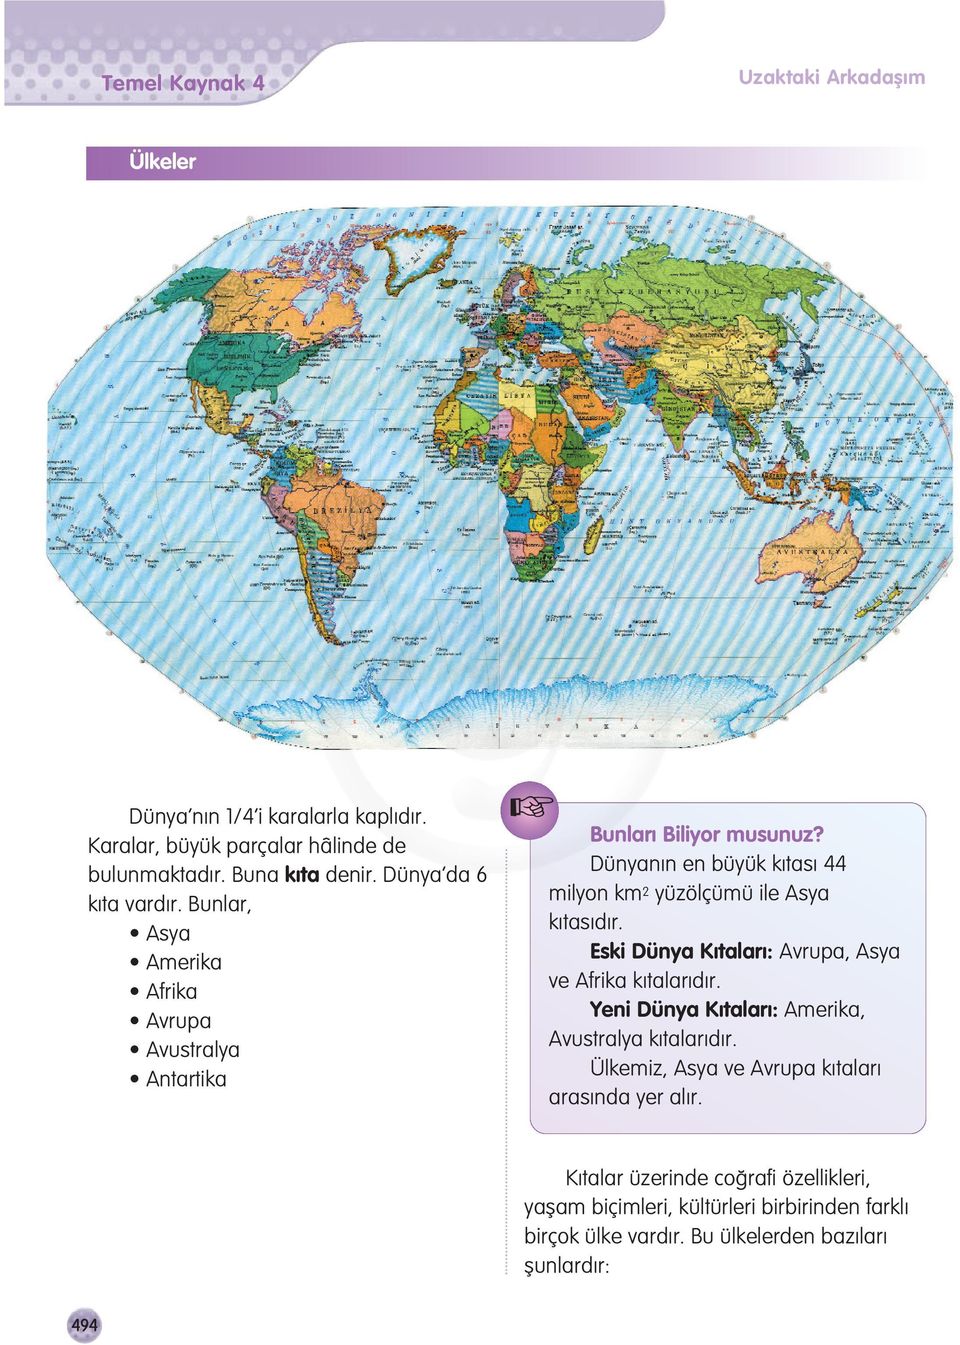 Dünyan n en büyük k tas 44 milyon km 2 yüzölçümü ile Asya k tas d r. Eski Dünya K talar : Avrupa, Asya ve Afrika k talar d r.